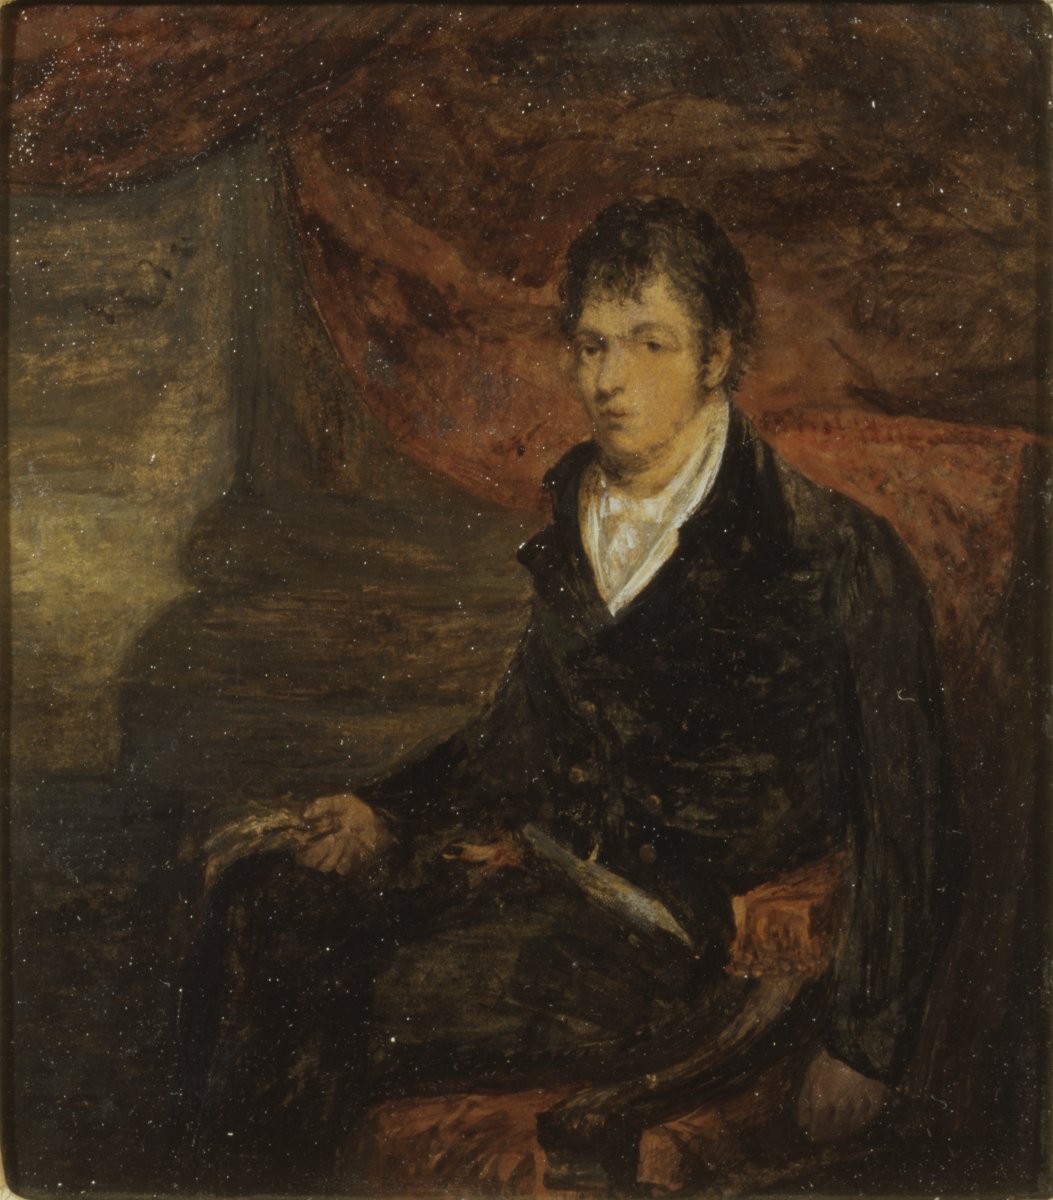 Image of Robert Burns (1759-96) poet [identity doubtful]